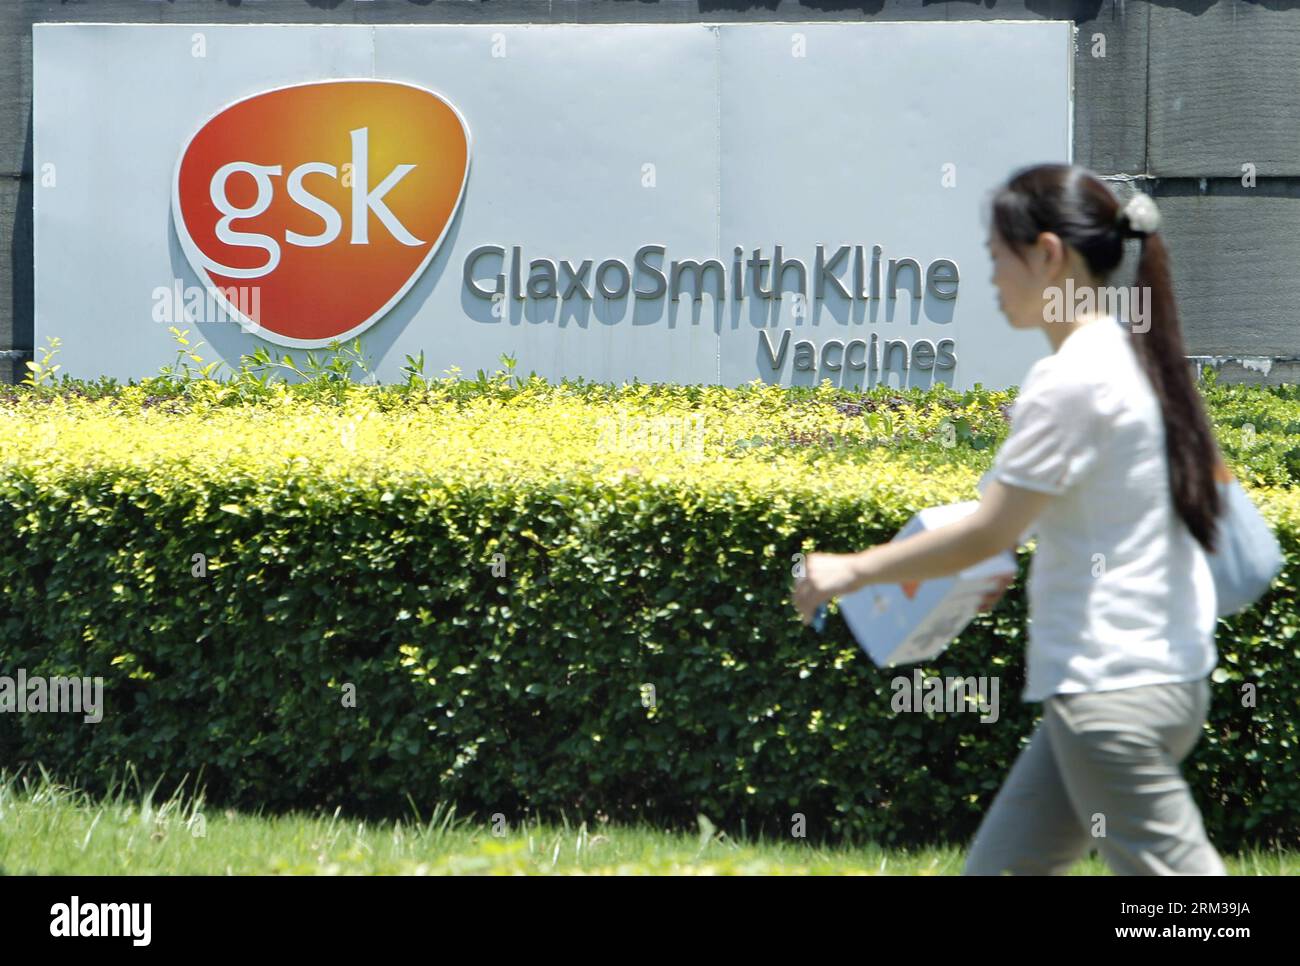 Bildnummer : 60115717 Datum : 12.07.2013 Copyright : imago/Xinhua (130712) -- SHANGHAI, 12 juillet 2013 (Xinhua) -- Un piéton marche devant une société de vaccins de GlaxoSmithKline (GSK), le plus grand fabricant de médicaments britannique, à Shanghai, dans l est de la Chine, le 12 juillet 2013. Certains cadres supérieurs de GlaxoSmithKline (China) Investment Co., Ltd font l'objet d'une enquête pour corruption présumée et violations fiscales, a déclaré jeudi la police chinoise. (Xinhua/Ding Ting) (ry) CHINA-GSK-SOUPÇONNÉ DE CORRUPTION (CN) PUBLICATIONxNOTxINxCHN Wirtschaft premiumd x0x xsk 2013 quer 60115717 Date 12 07 2013 Copyright Imago XINHUA Banque D'Images